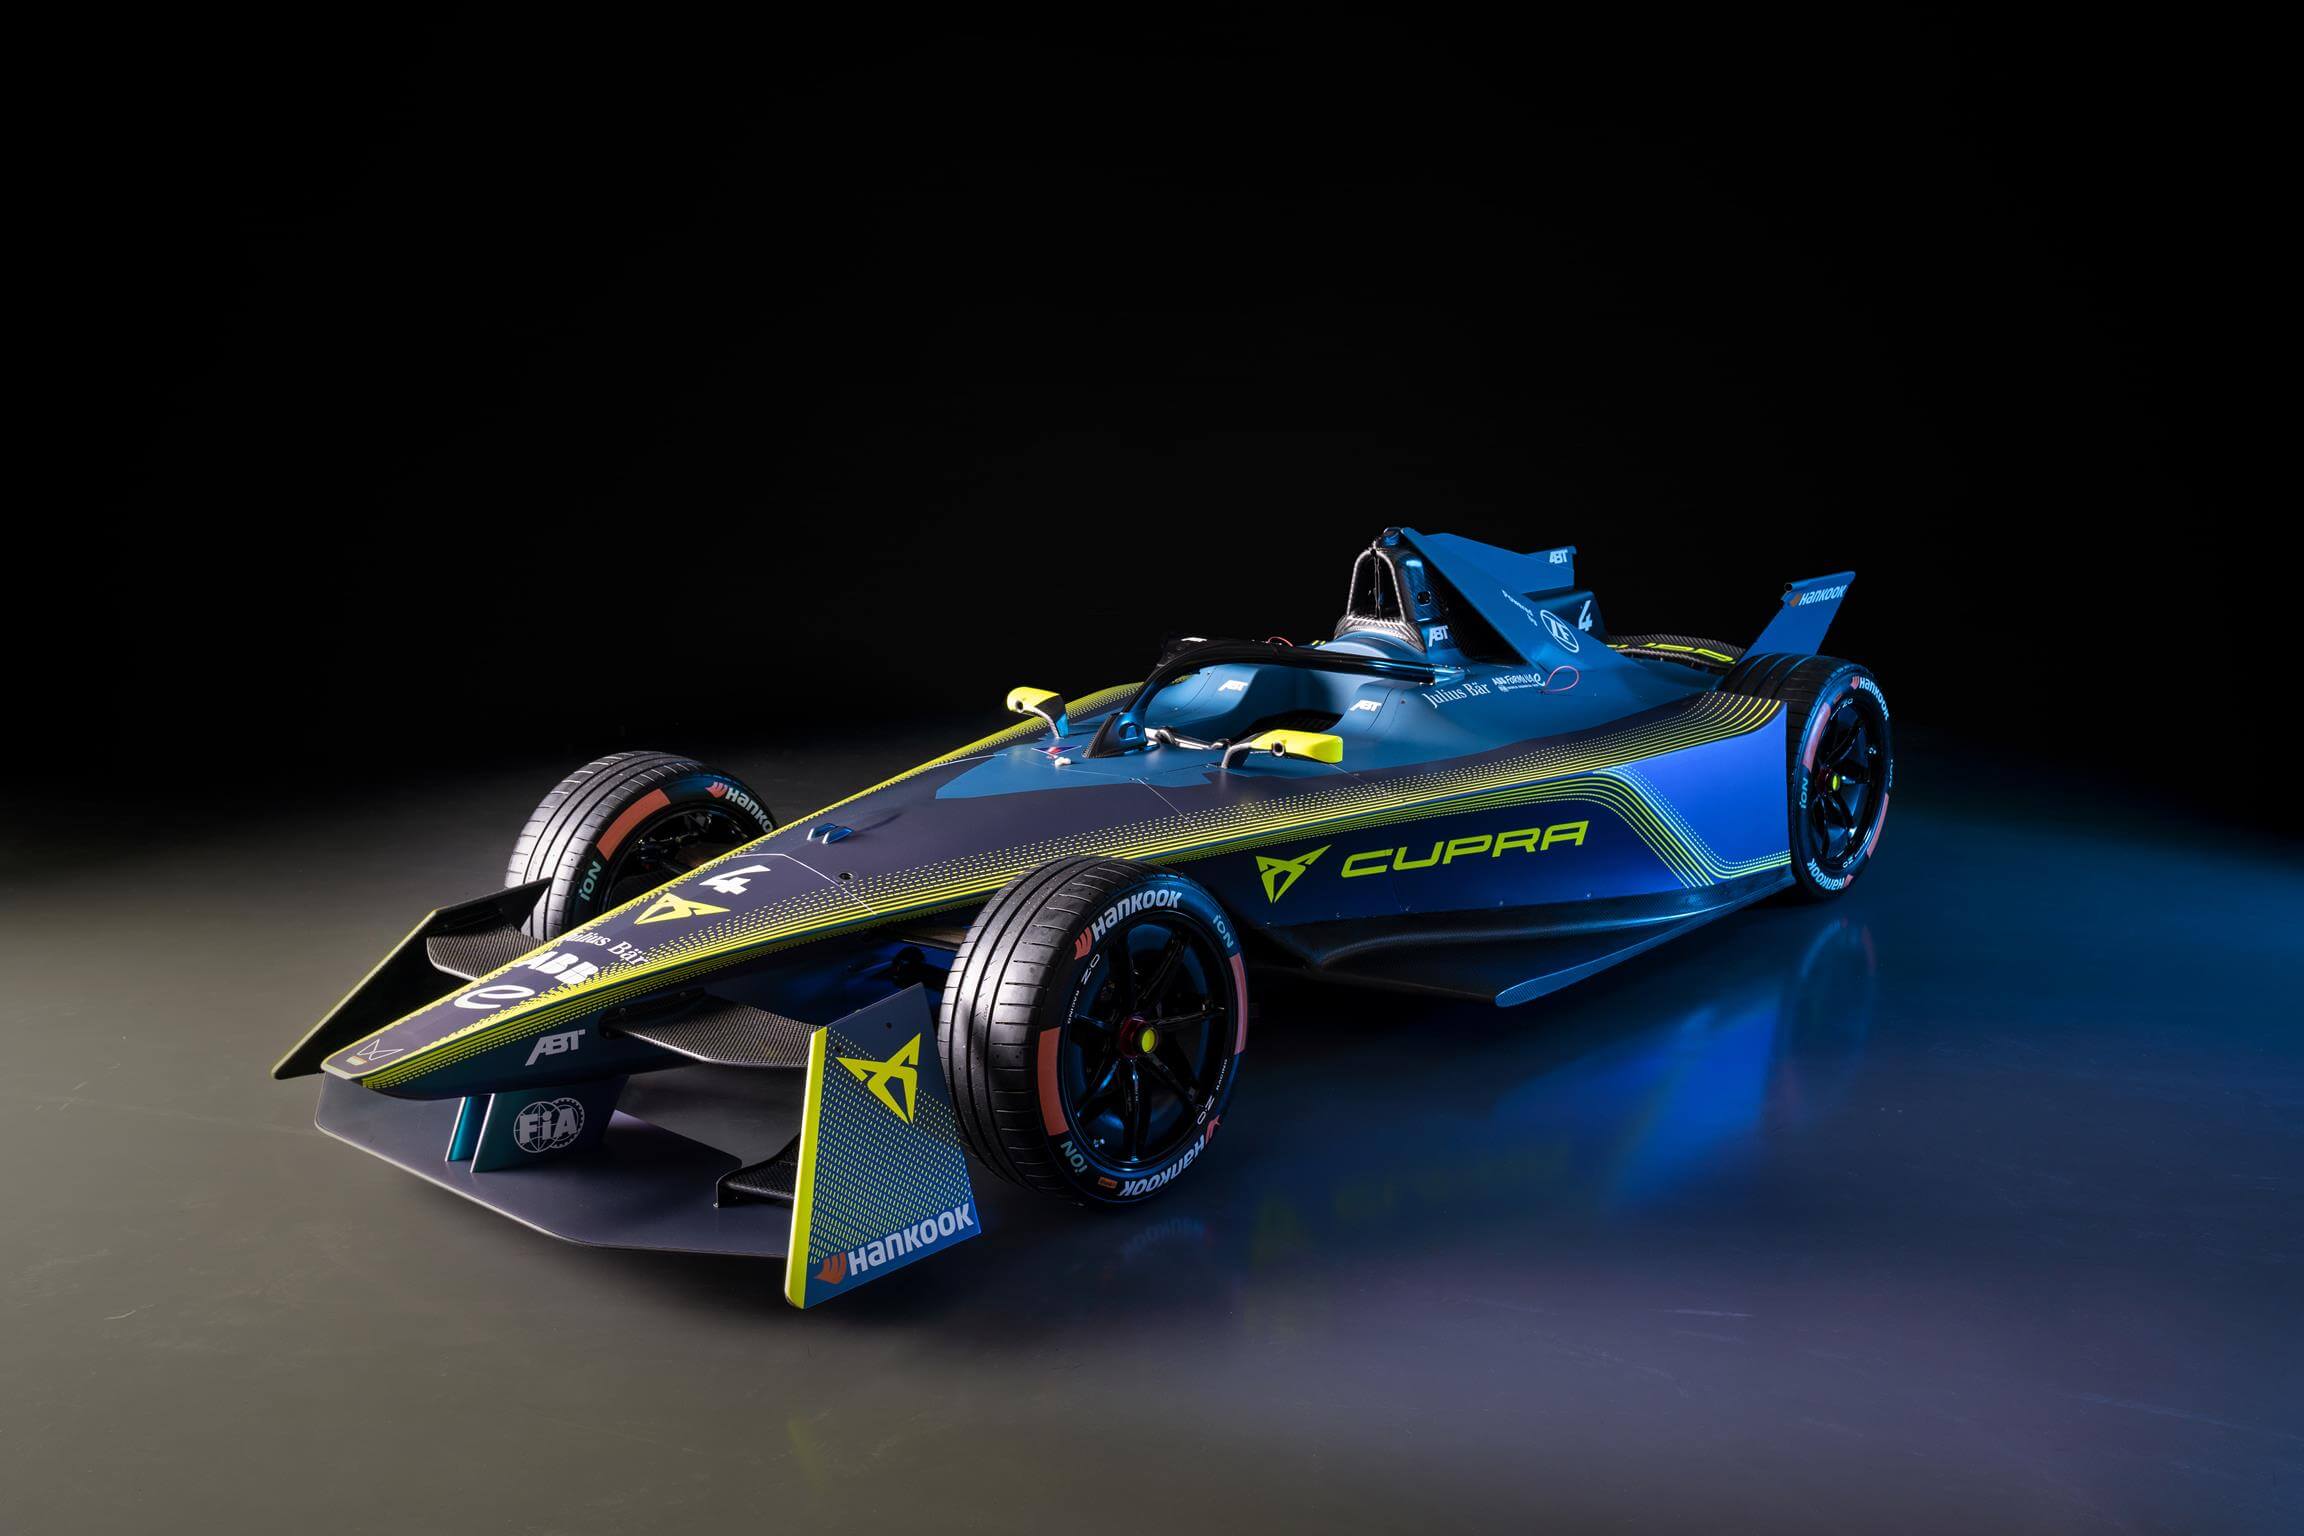 ABT bringt überraschend Automarke Cupra in die Formel E and zeigt Lackierung für Saison 2023